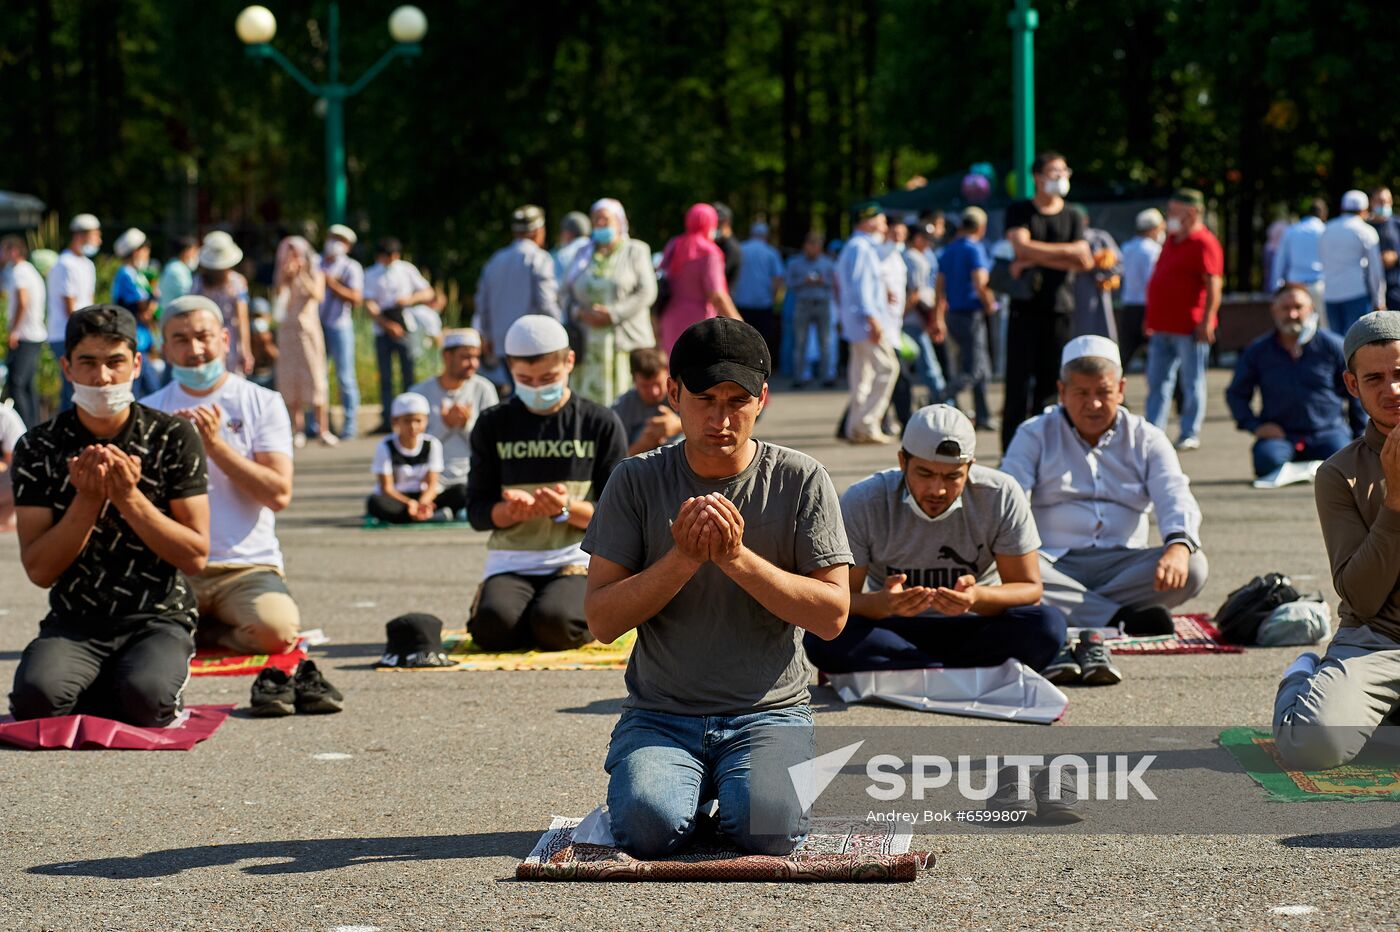 Russia Eid al-Adha